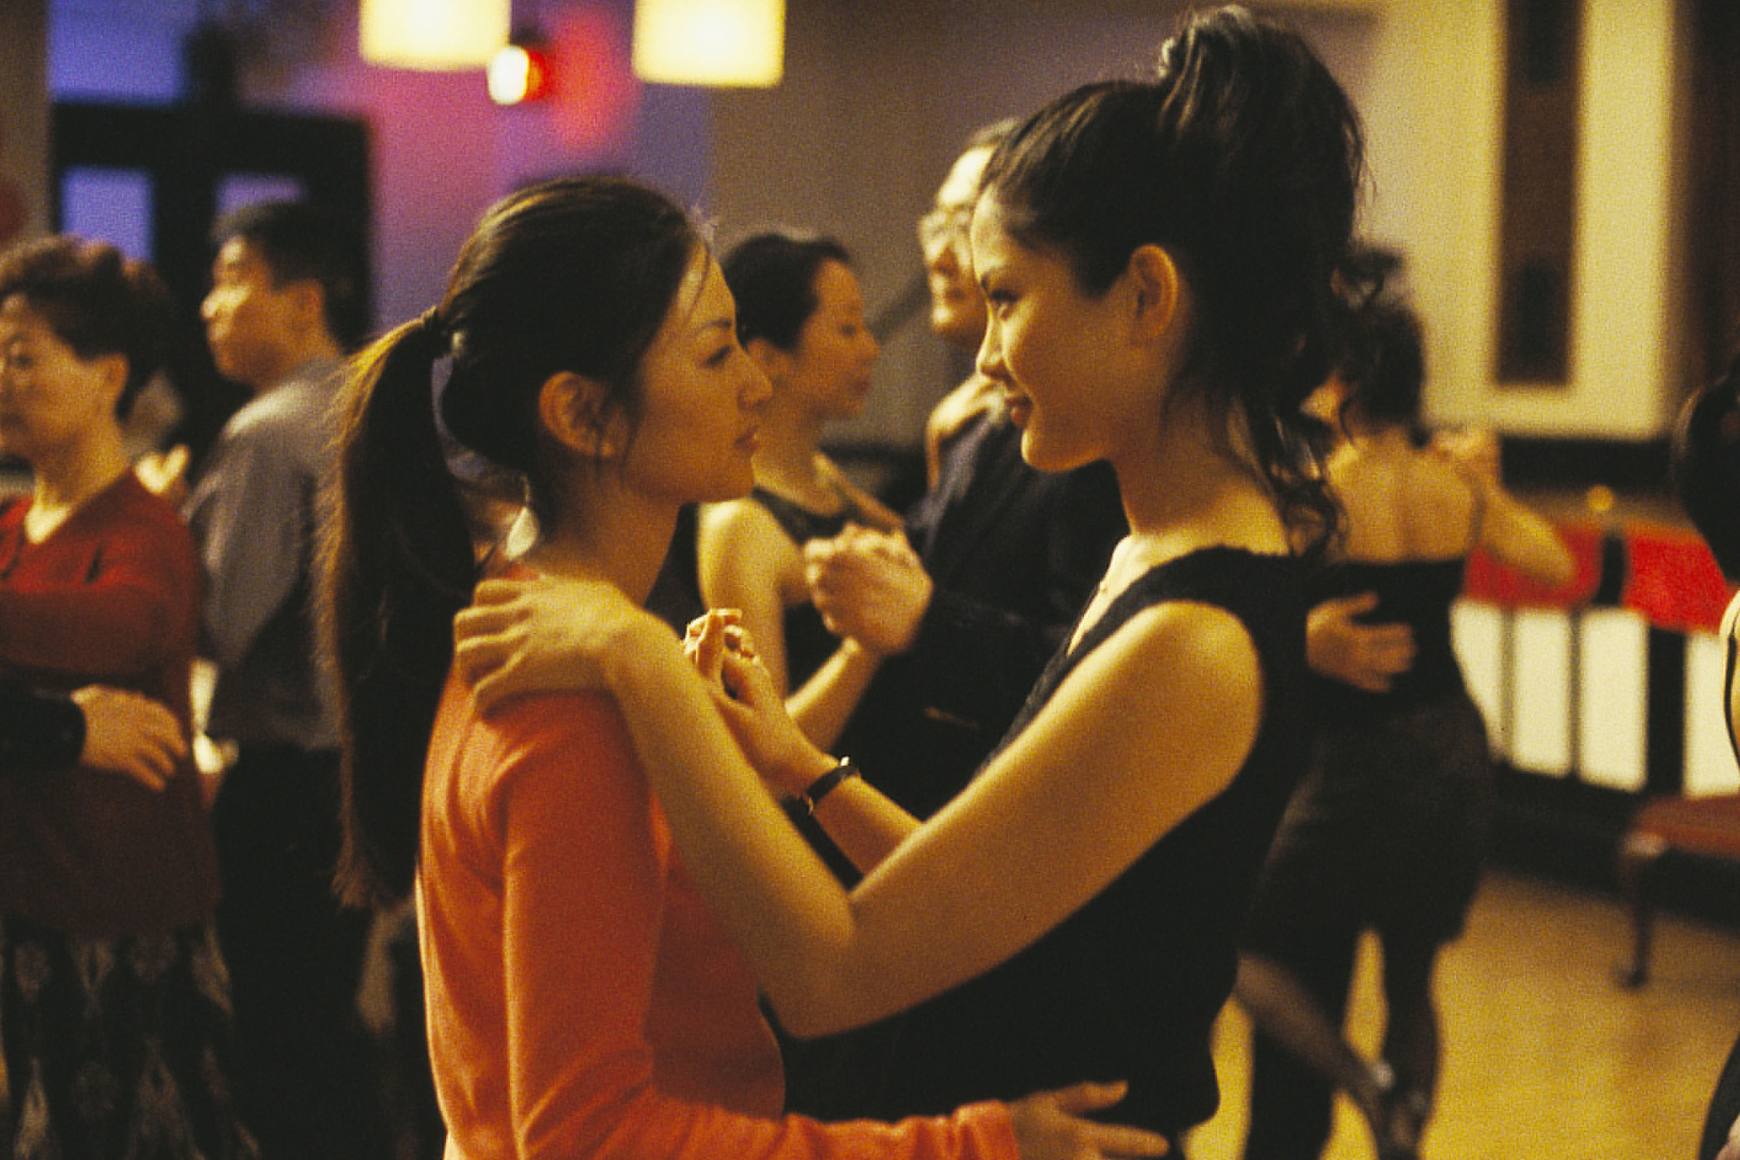 미셸 크루식(Michelle Krusiec)과 린 첸(Lynn Chen)은 서로의 눈을 바라보며 천천히 춤을 춥니다.